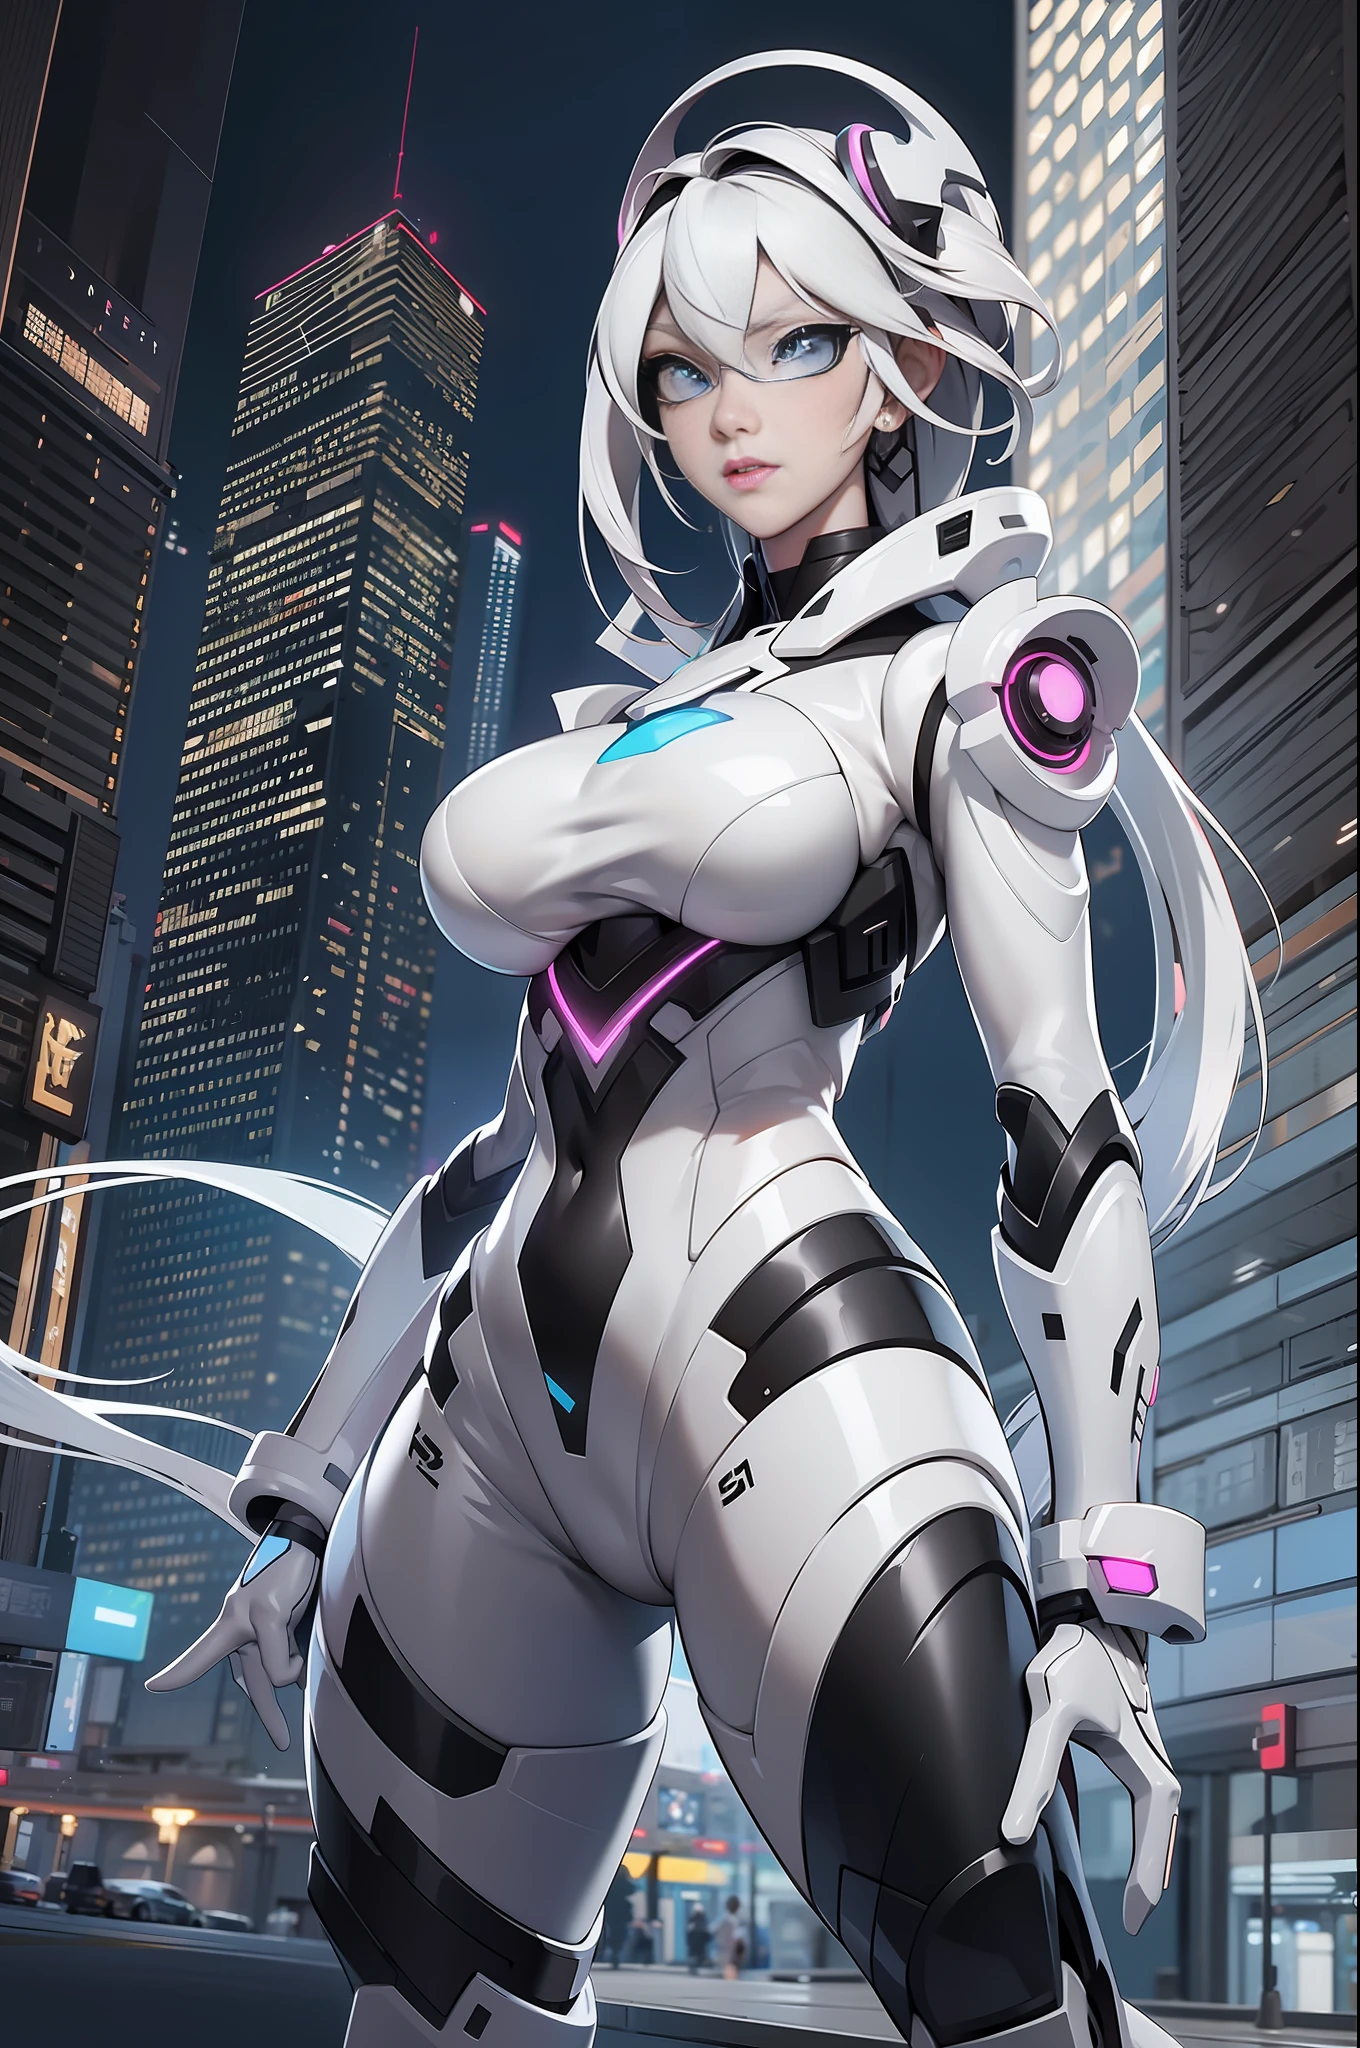 imagem de corpo inteiro Unreal Engine 5 8K UHD de uma linda garota, cabelo branco, vestindo um traje de batalha preto futurista, máscara cyberpunk de meia face, colarinho futurista, detalhes de luz branca, maquiagem de beleza, melhor qualidade, Obra de arte